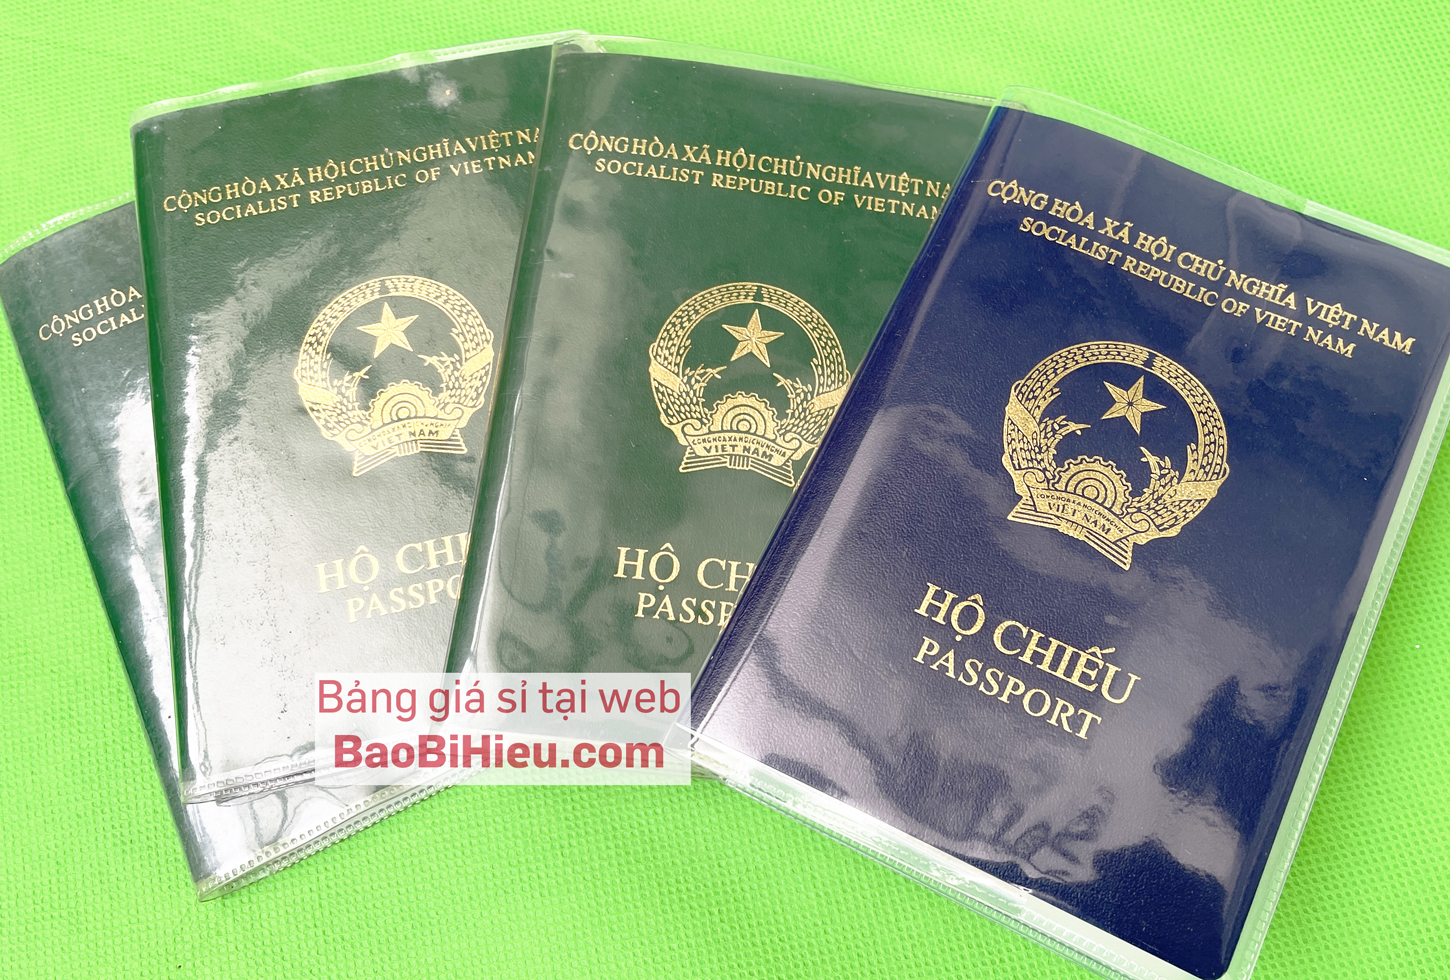 Hình ảnh Combo 10 cái vỏ bao hộ chiếu (passport) dẻo trong có khe đựng vé máy bay và các thoại thẻ 10JV132